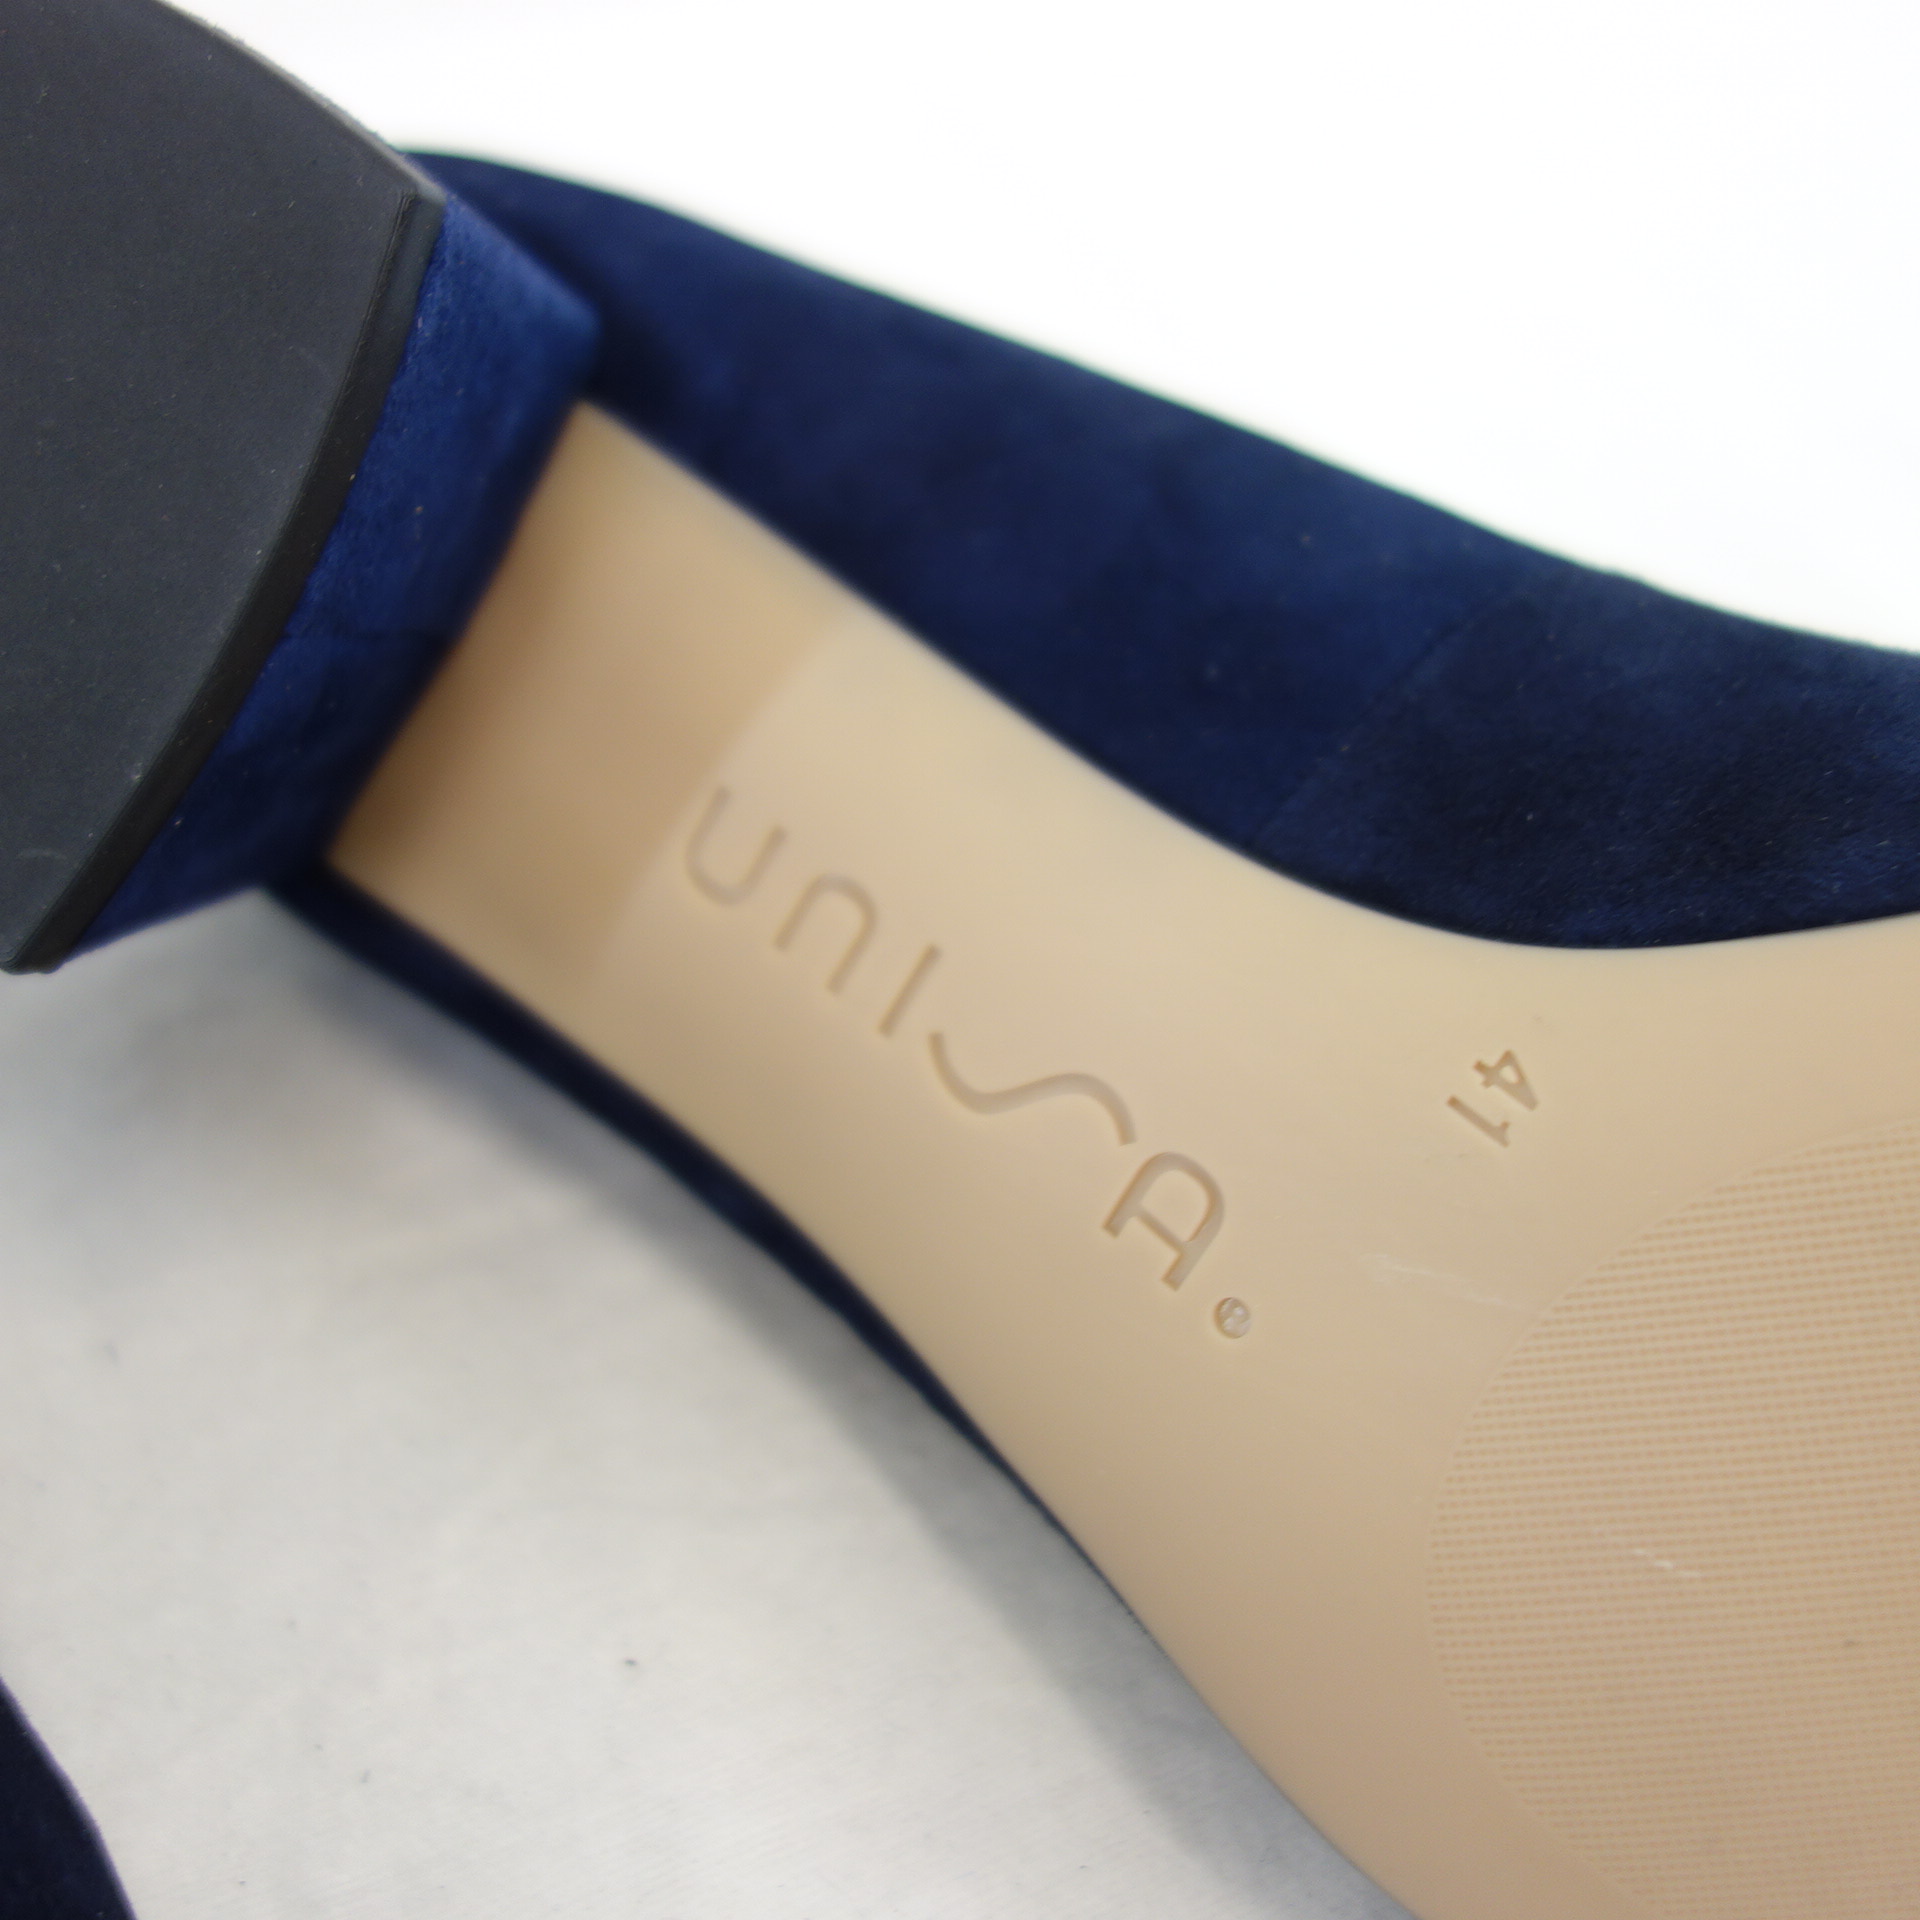 UNISA Damen Schuhe Business Pumps Dunkelblau Wildleder Modell Lasie 37 Blockabsatz